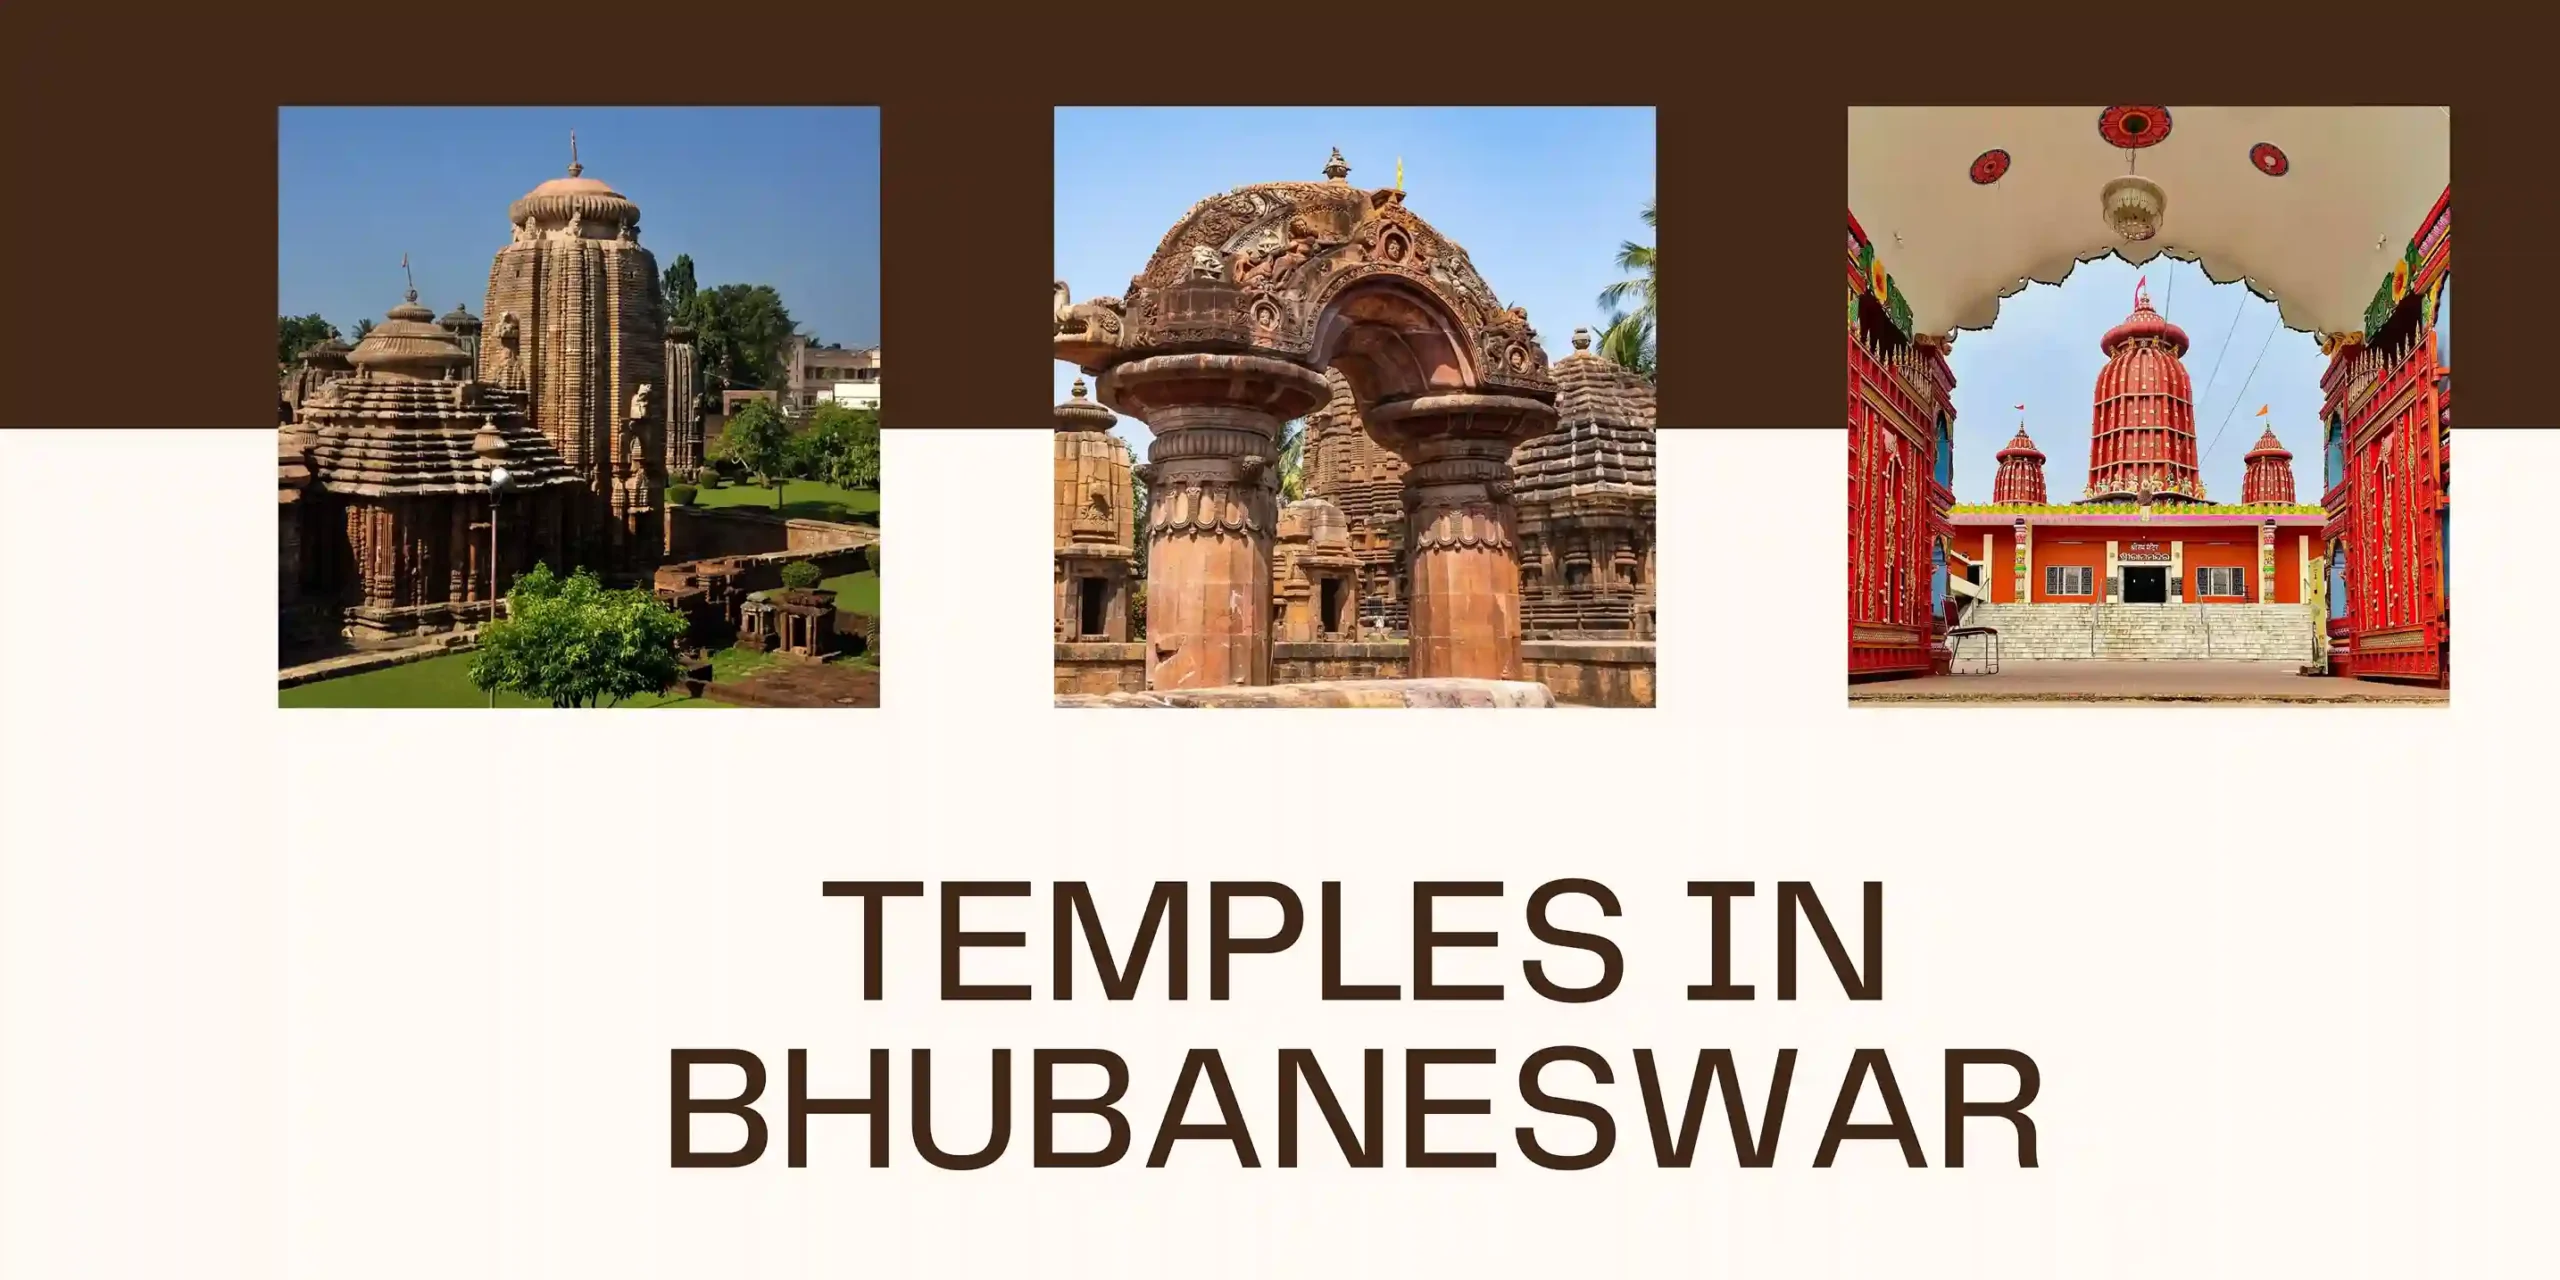 Temples in Bhubaneshwar